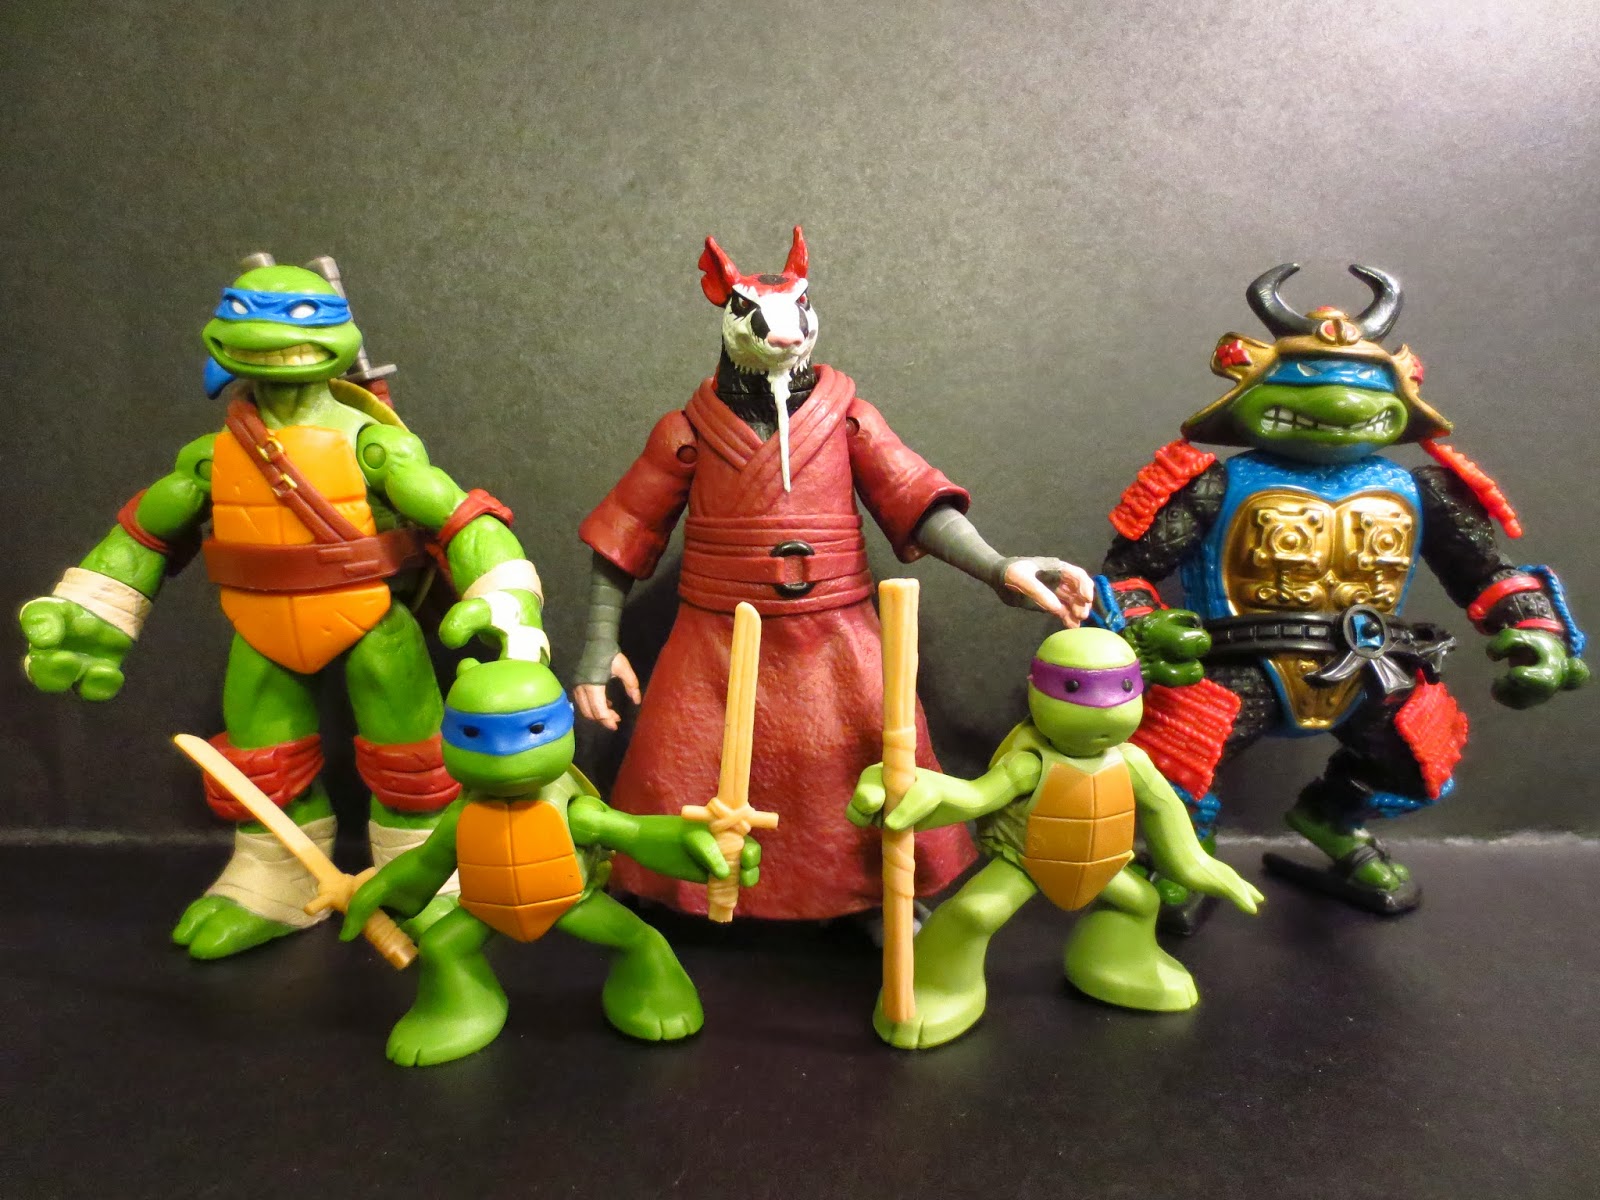 Teenage Mutant Ninja Turtles - Who had the best fits?